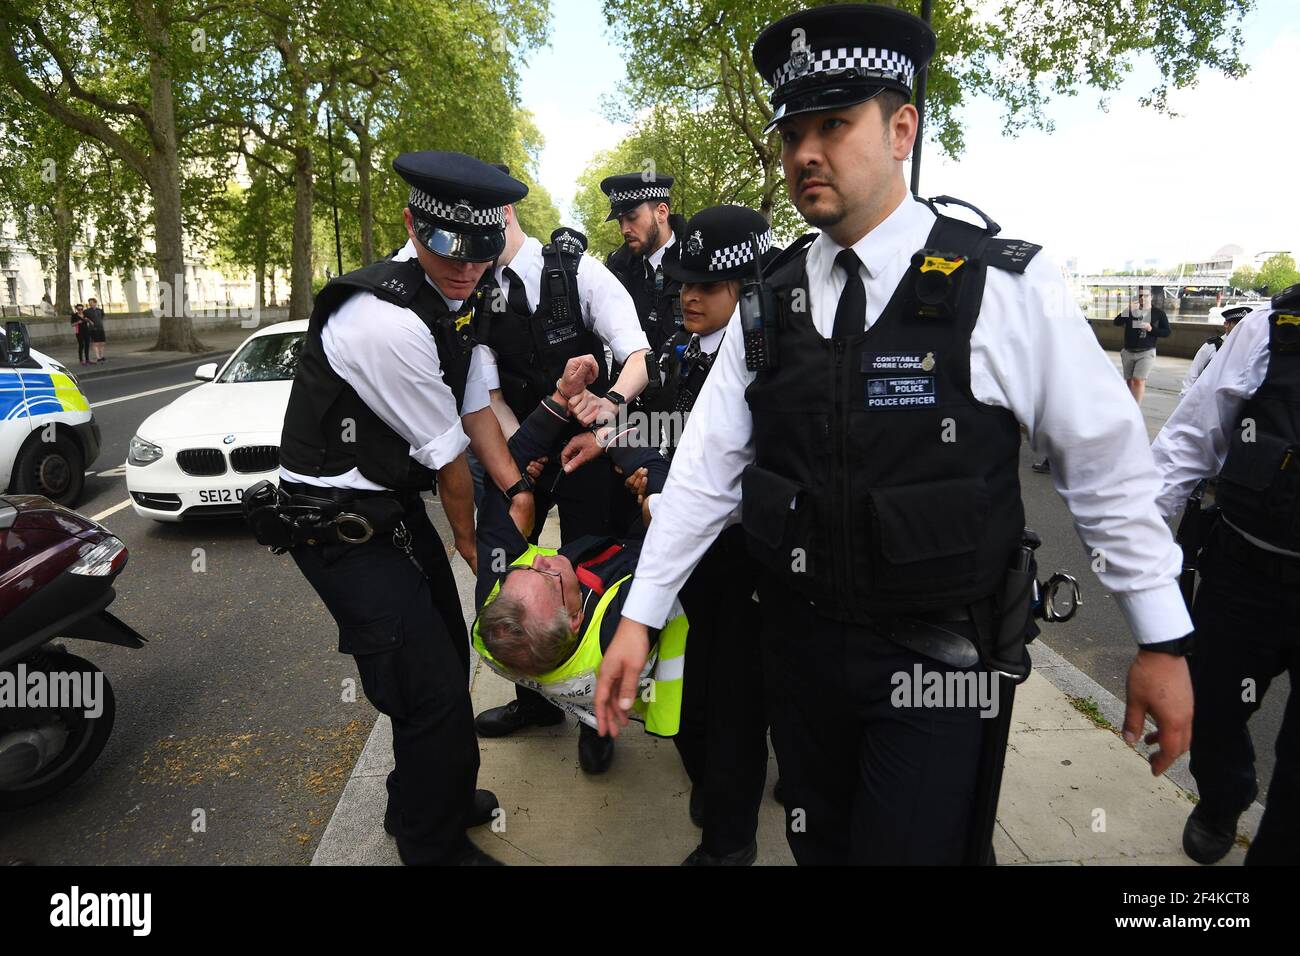 Aktenfoto vom 02/05/20 von einem Mann, der während eines Protestes gegen die Covid-19-Sperre vor dem New Scotland Yard in London von Polizisten mitgenommen wurde. Am Dienstag jährt sich zum ersten Mal die Ankündigung der ersten UK-weiten Sperre am 23. März 2020. Ausgabedatum: Montag, 22. März 2021. Stockfoto